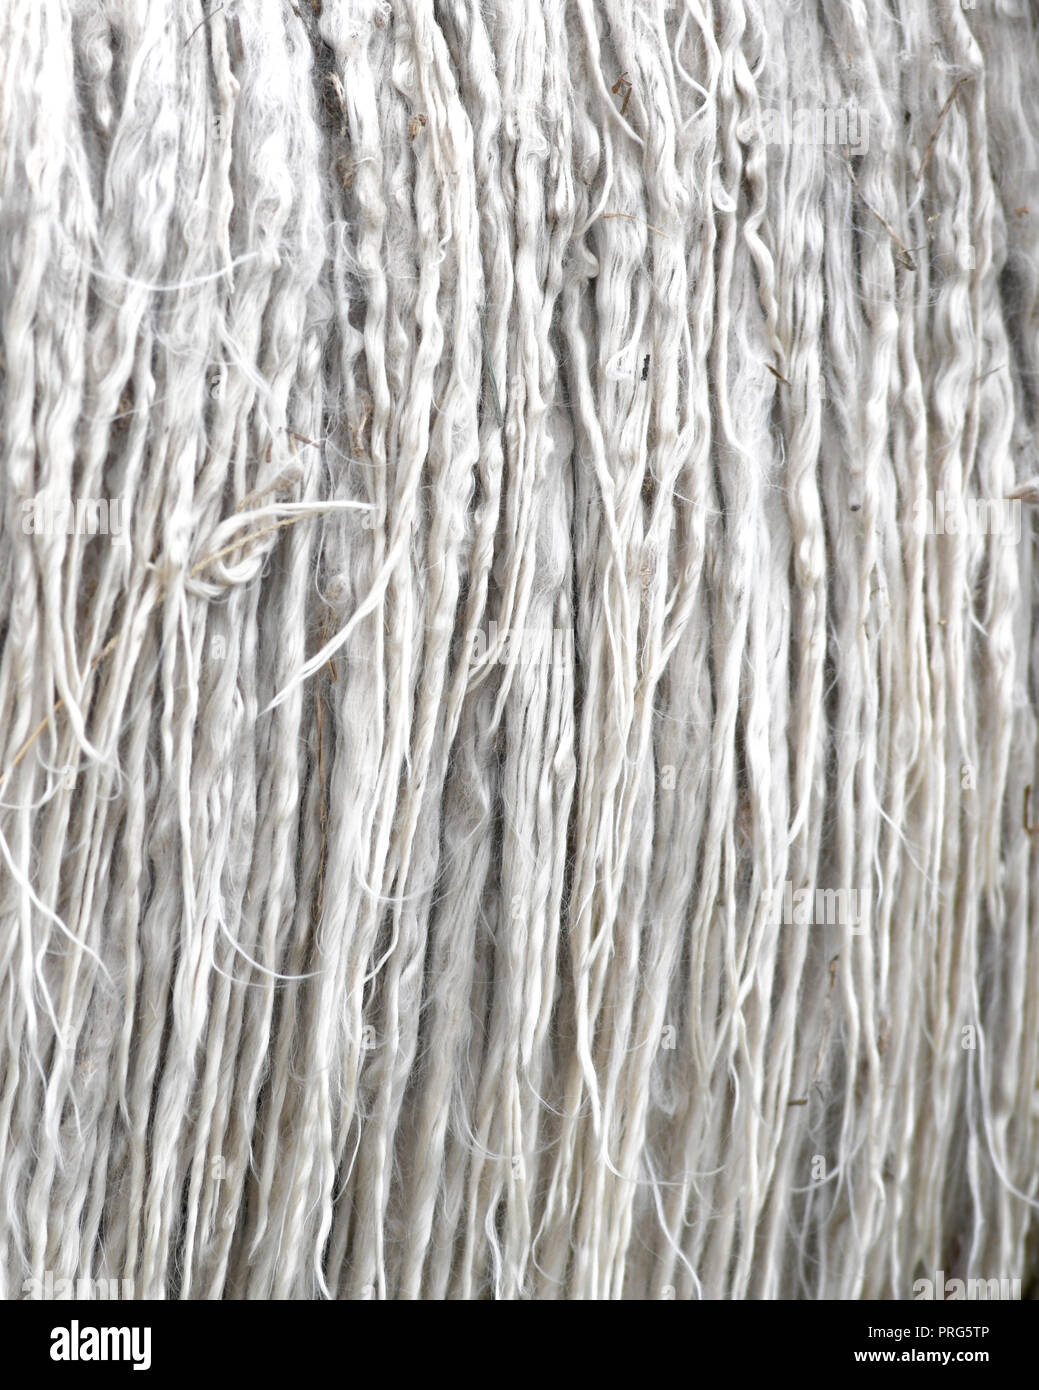 Grau Alpaka Tier Fleece un-gewaschen und knorrigen mit kleinen Stücken von Gras, Vollbild Bild Hintergrund zu Anzeige Kopie Raum Stockfoto